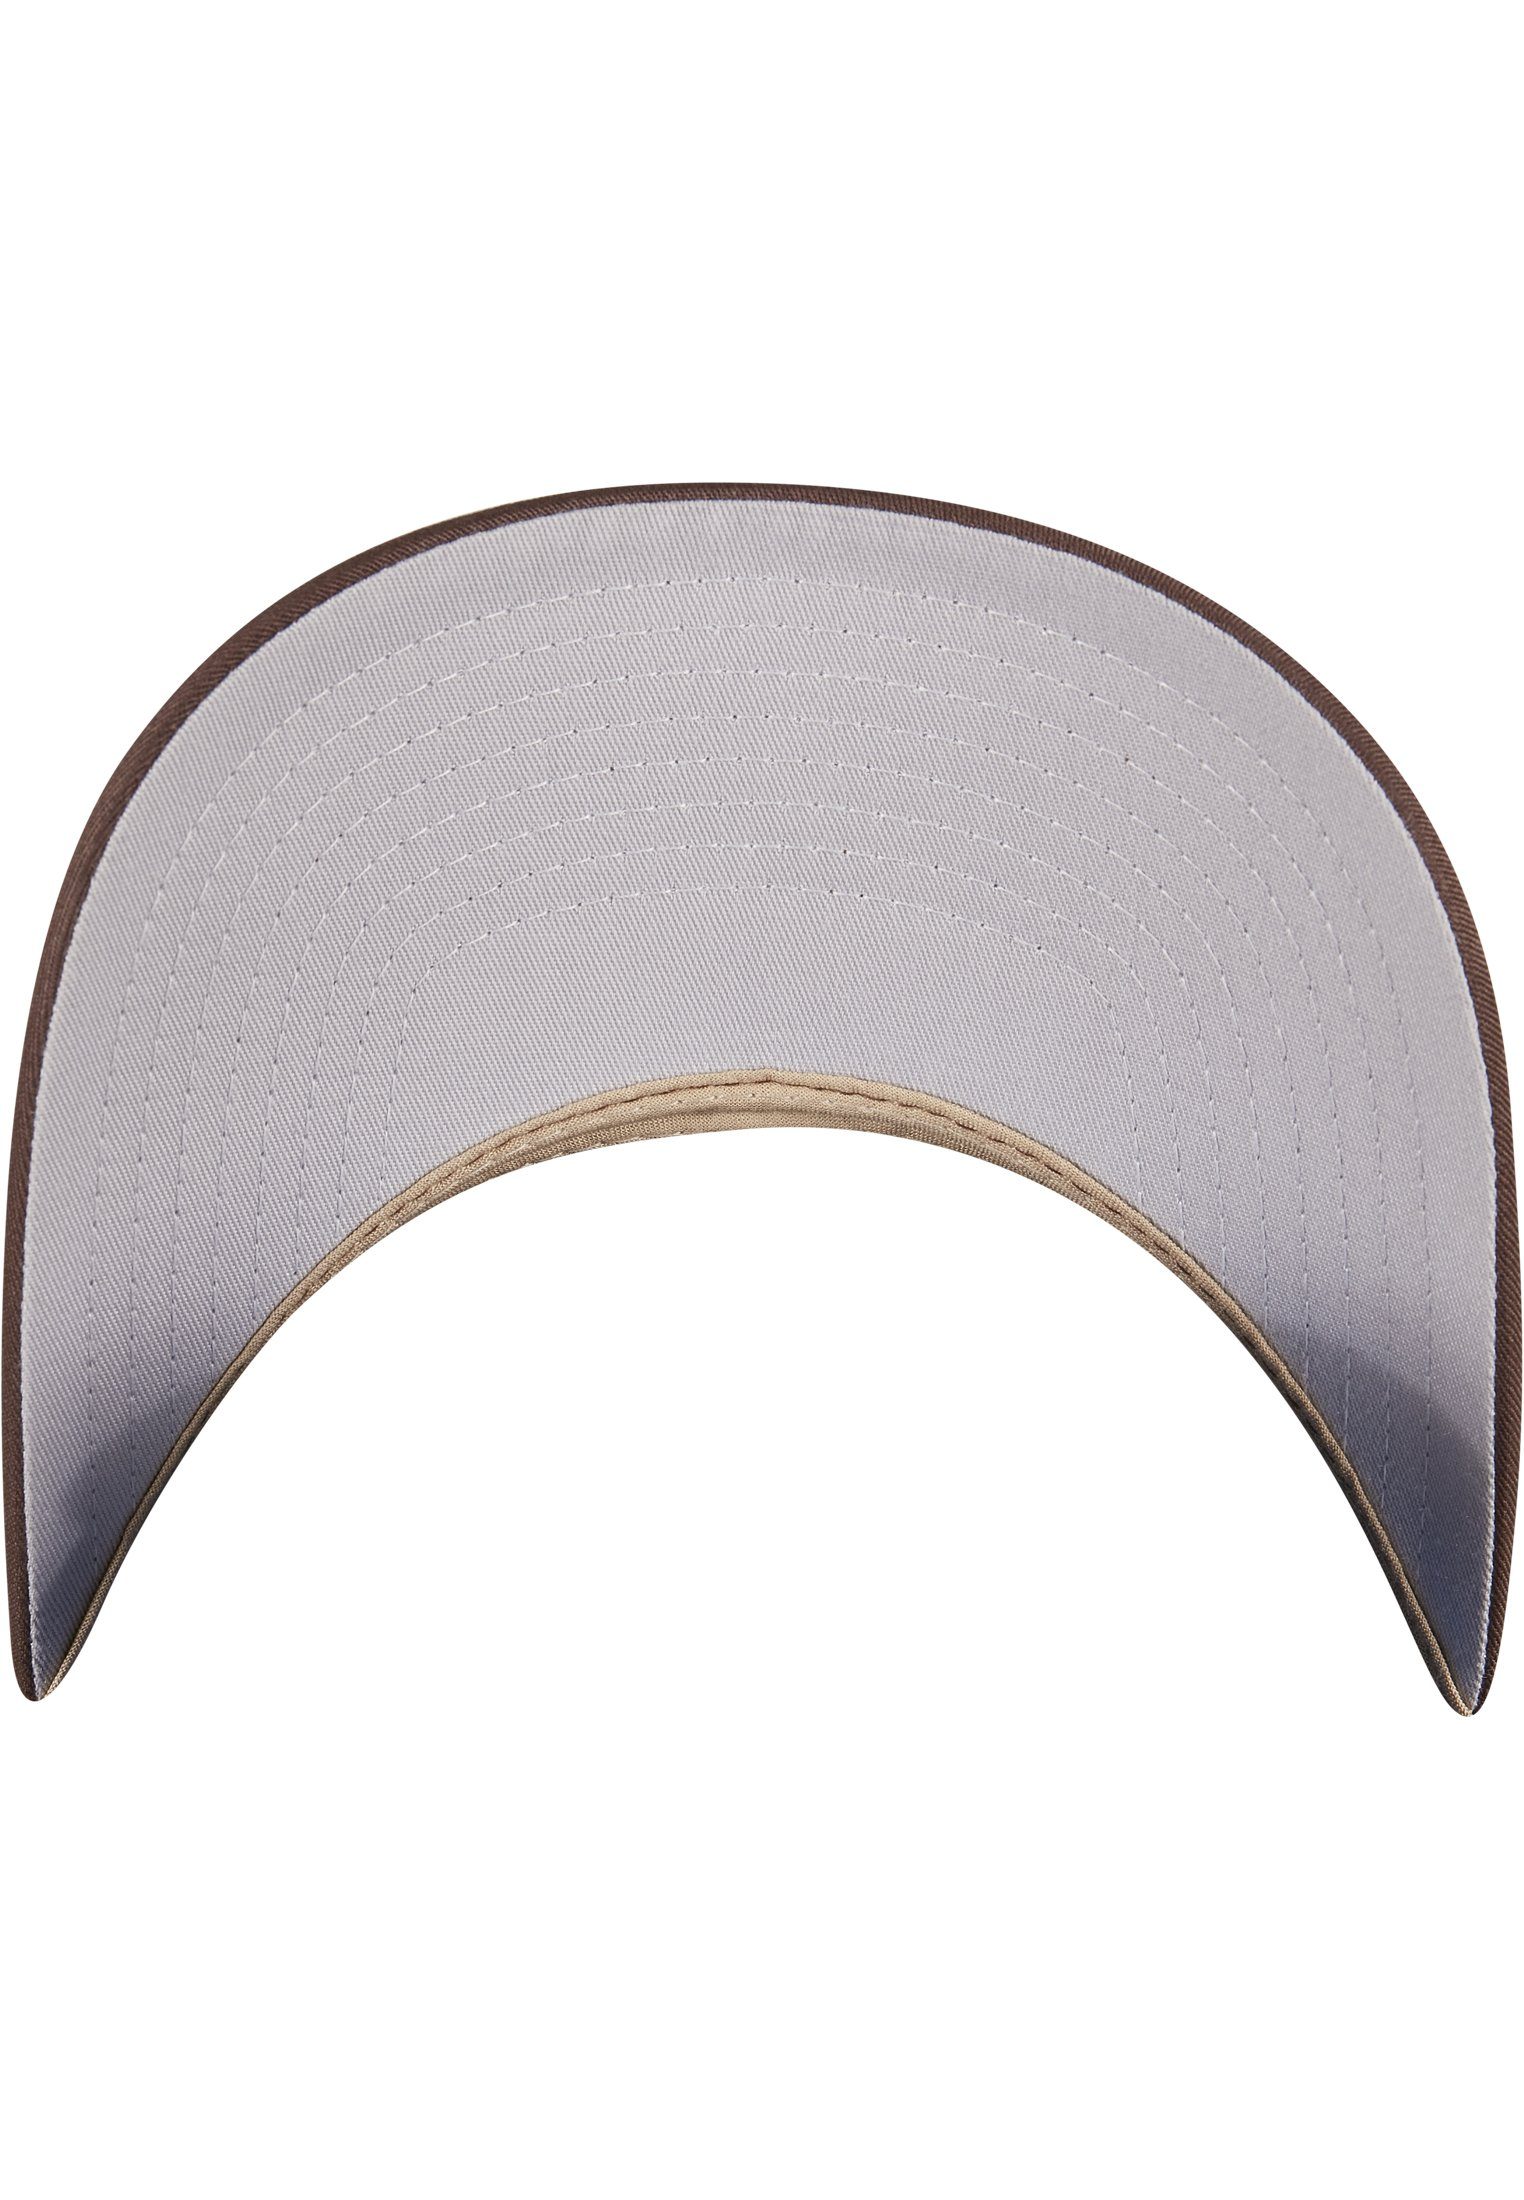 Flexfit Flex Cap Accessoires Omnimesh brown/khaki Cap 2-Tone 360°